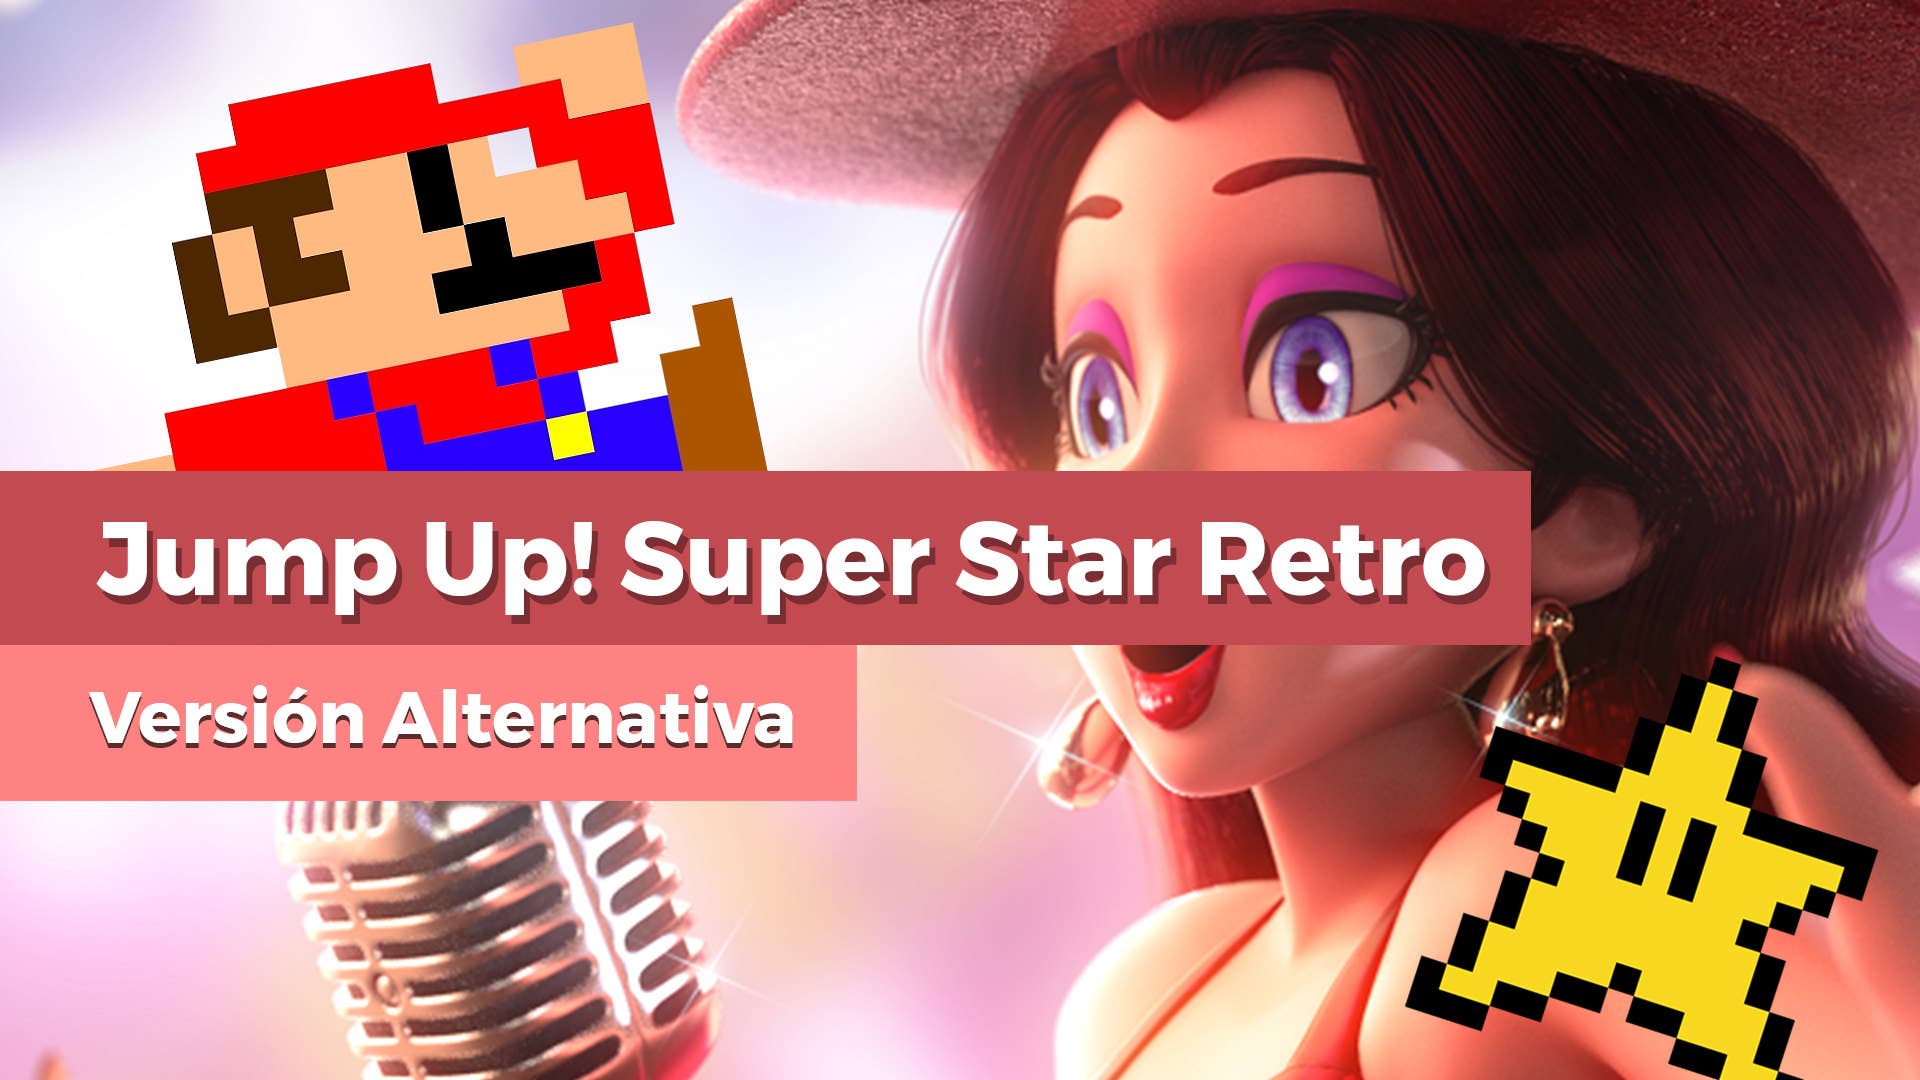 Super Mario Odyssey oculta una versión retro de Jump Up, Super Star!